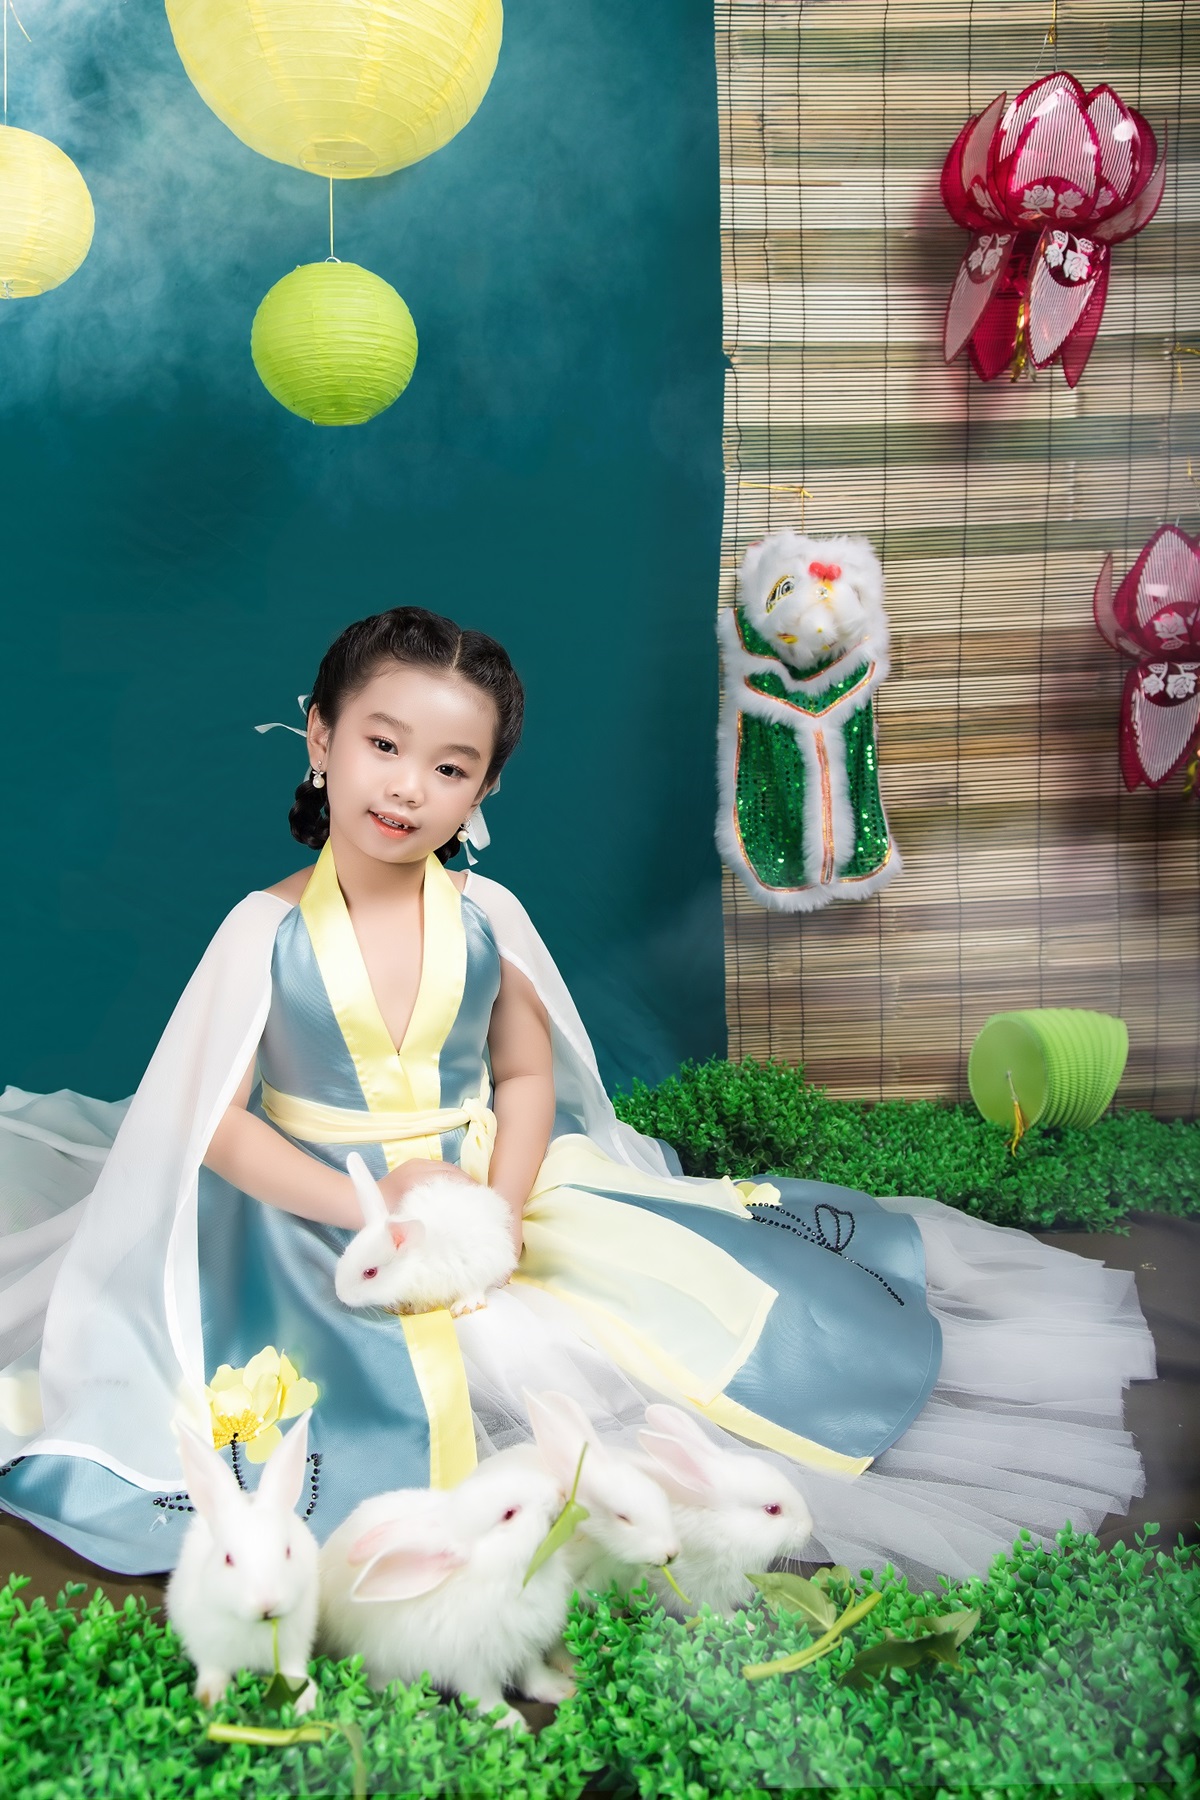  Mẫu nhí Nguyễn Ngọc Quỳnh Phương (6 tuổi) hóa thân thành chị Hằng ngồi trên cung trăng, chơi đùa cùng đàn thỏ ngọc.